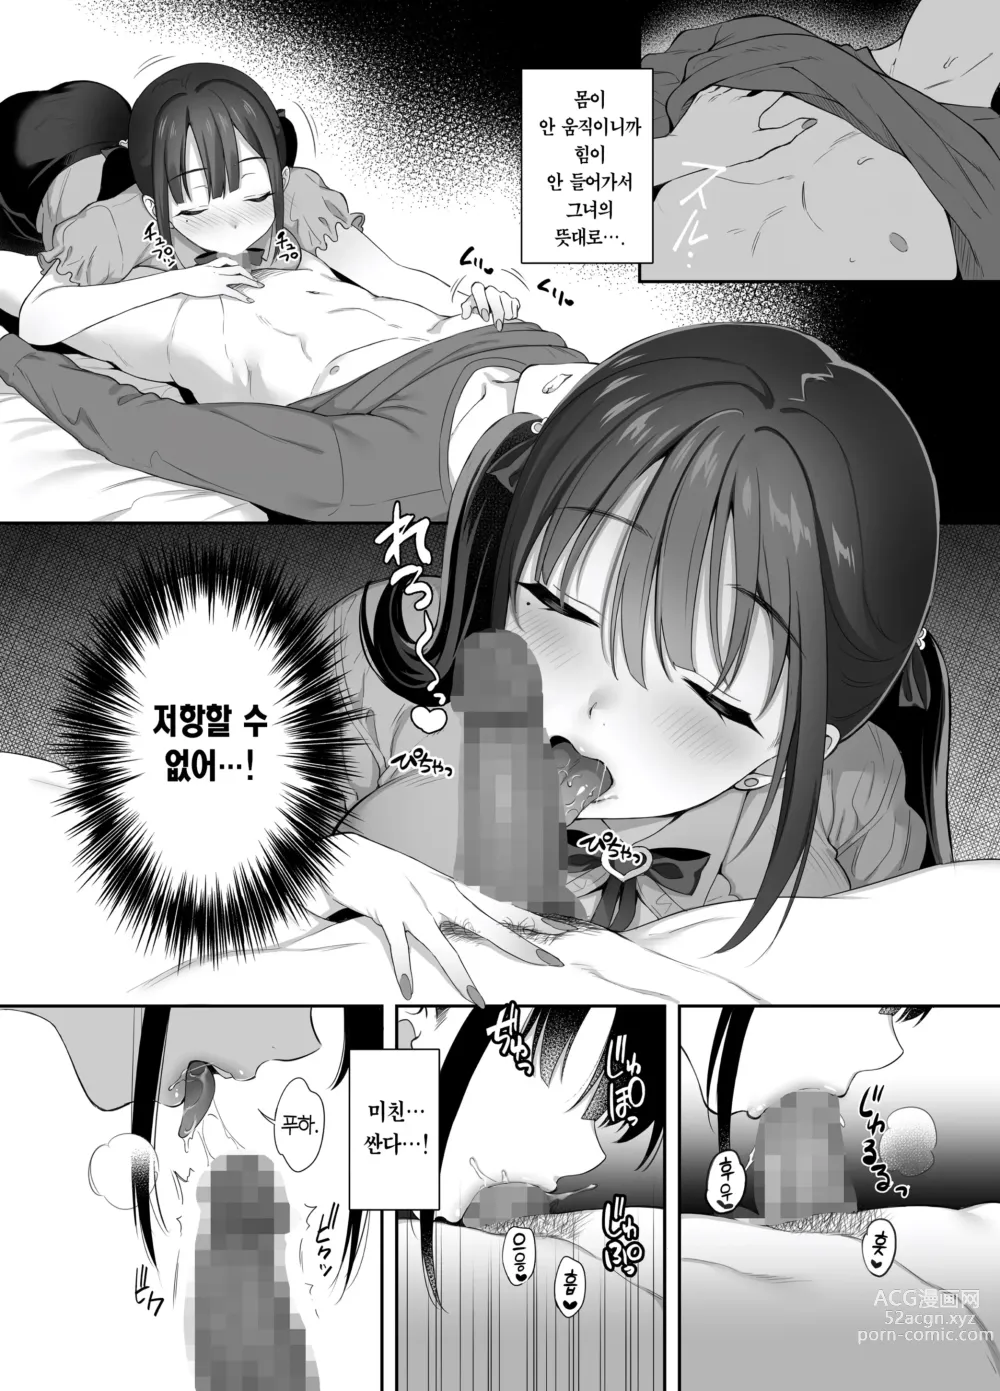 Page 14 of doujinshi 폐허에서 지뢰녀랑 밤새 질내사정 섹스한 이야기 2